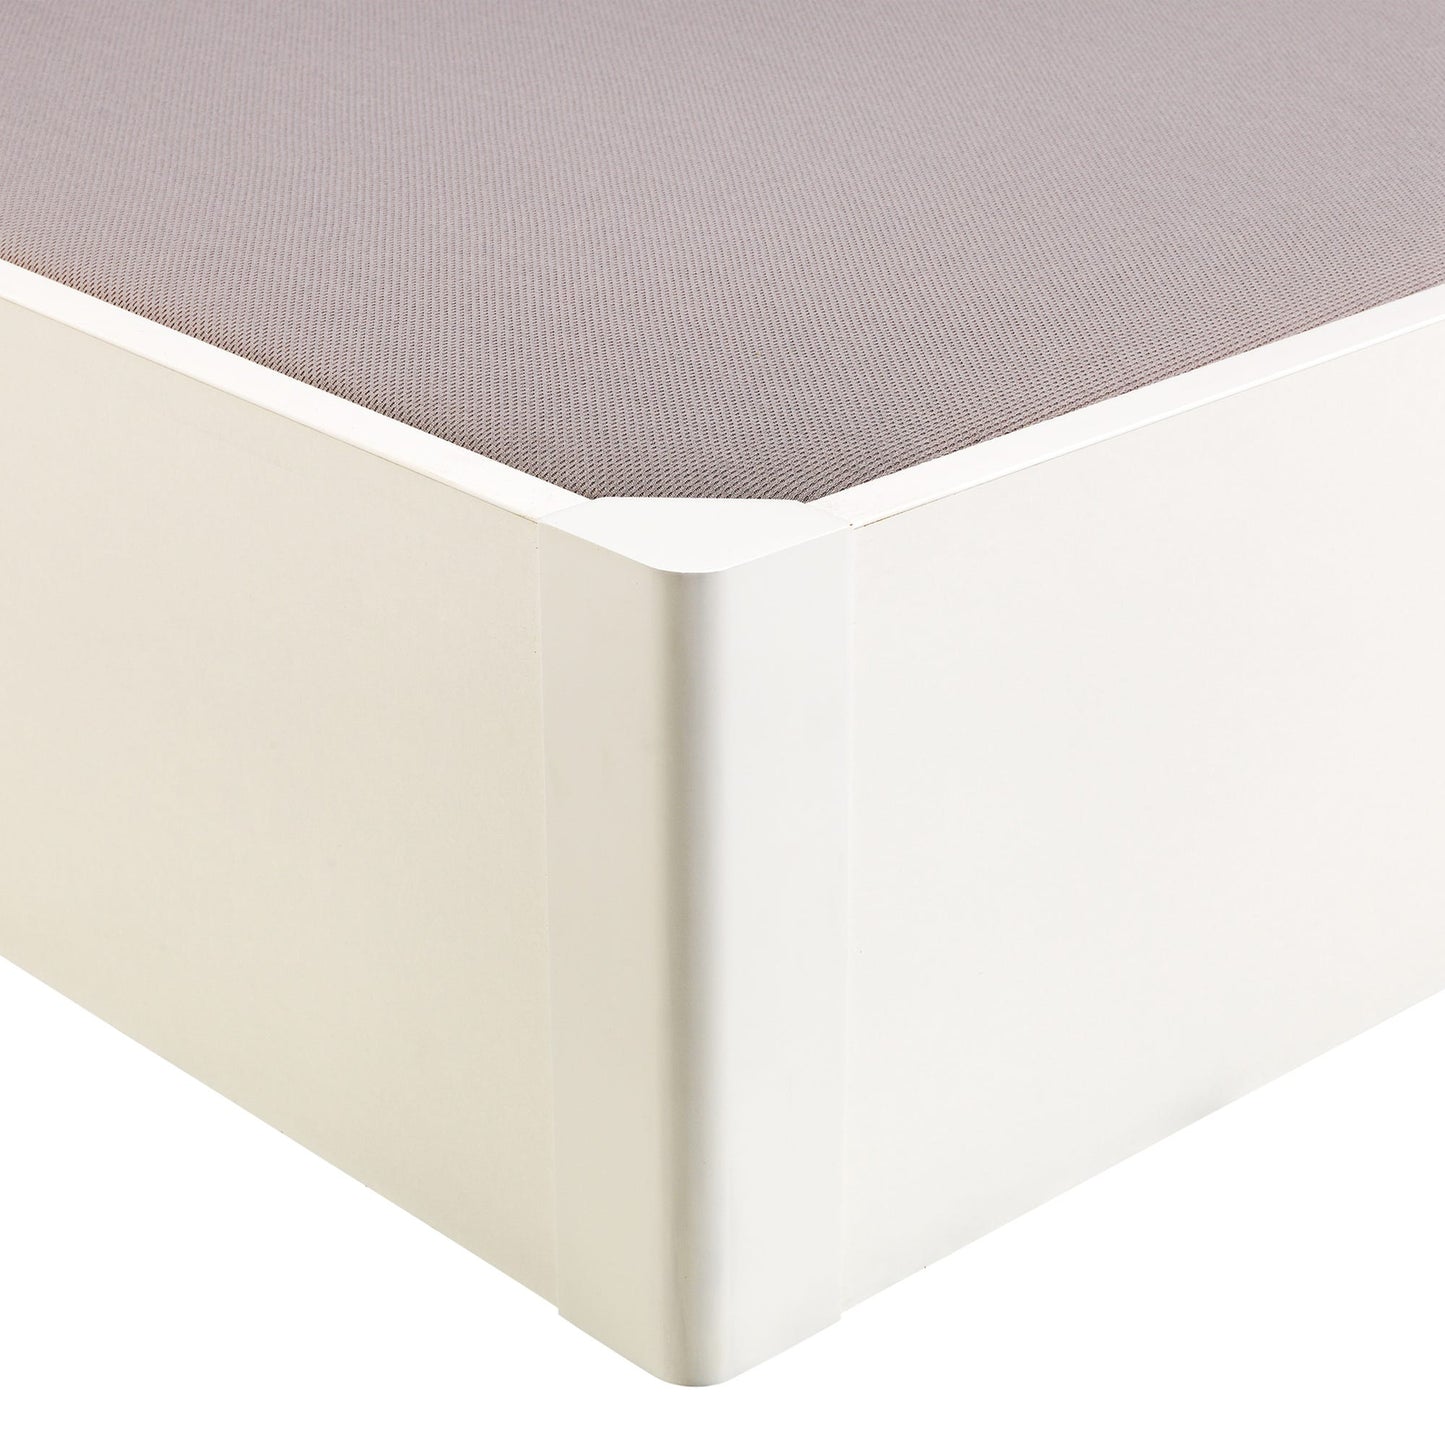 Canapé abatible de madera tapa única de color blanco - DESIGN - 135x182